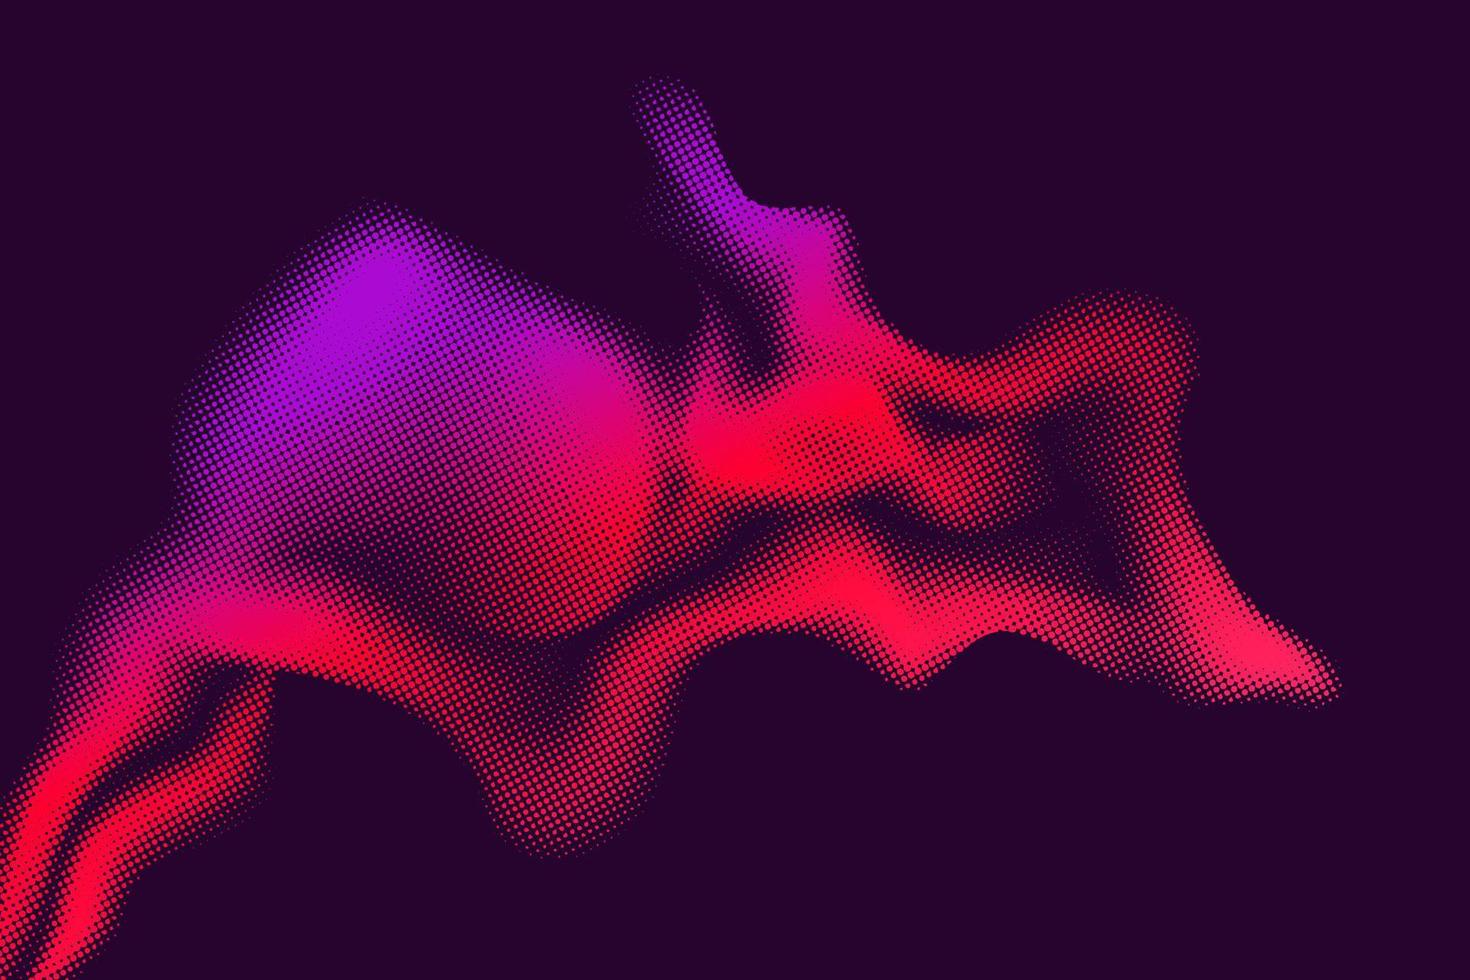 Vektorhalbton-Raucheffekt. lebendiger abstrakter hintergrund. Farben und Texturen im Retro-Stil der 80er Jahre. vektor